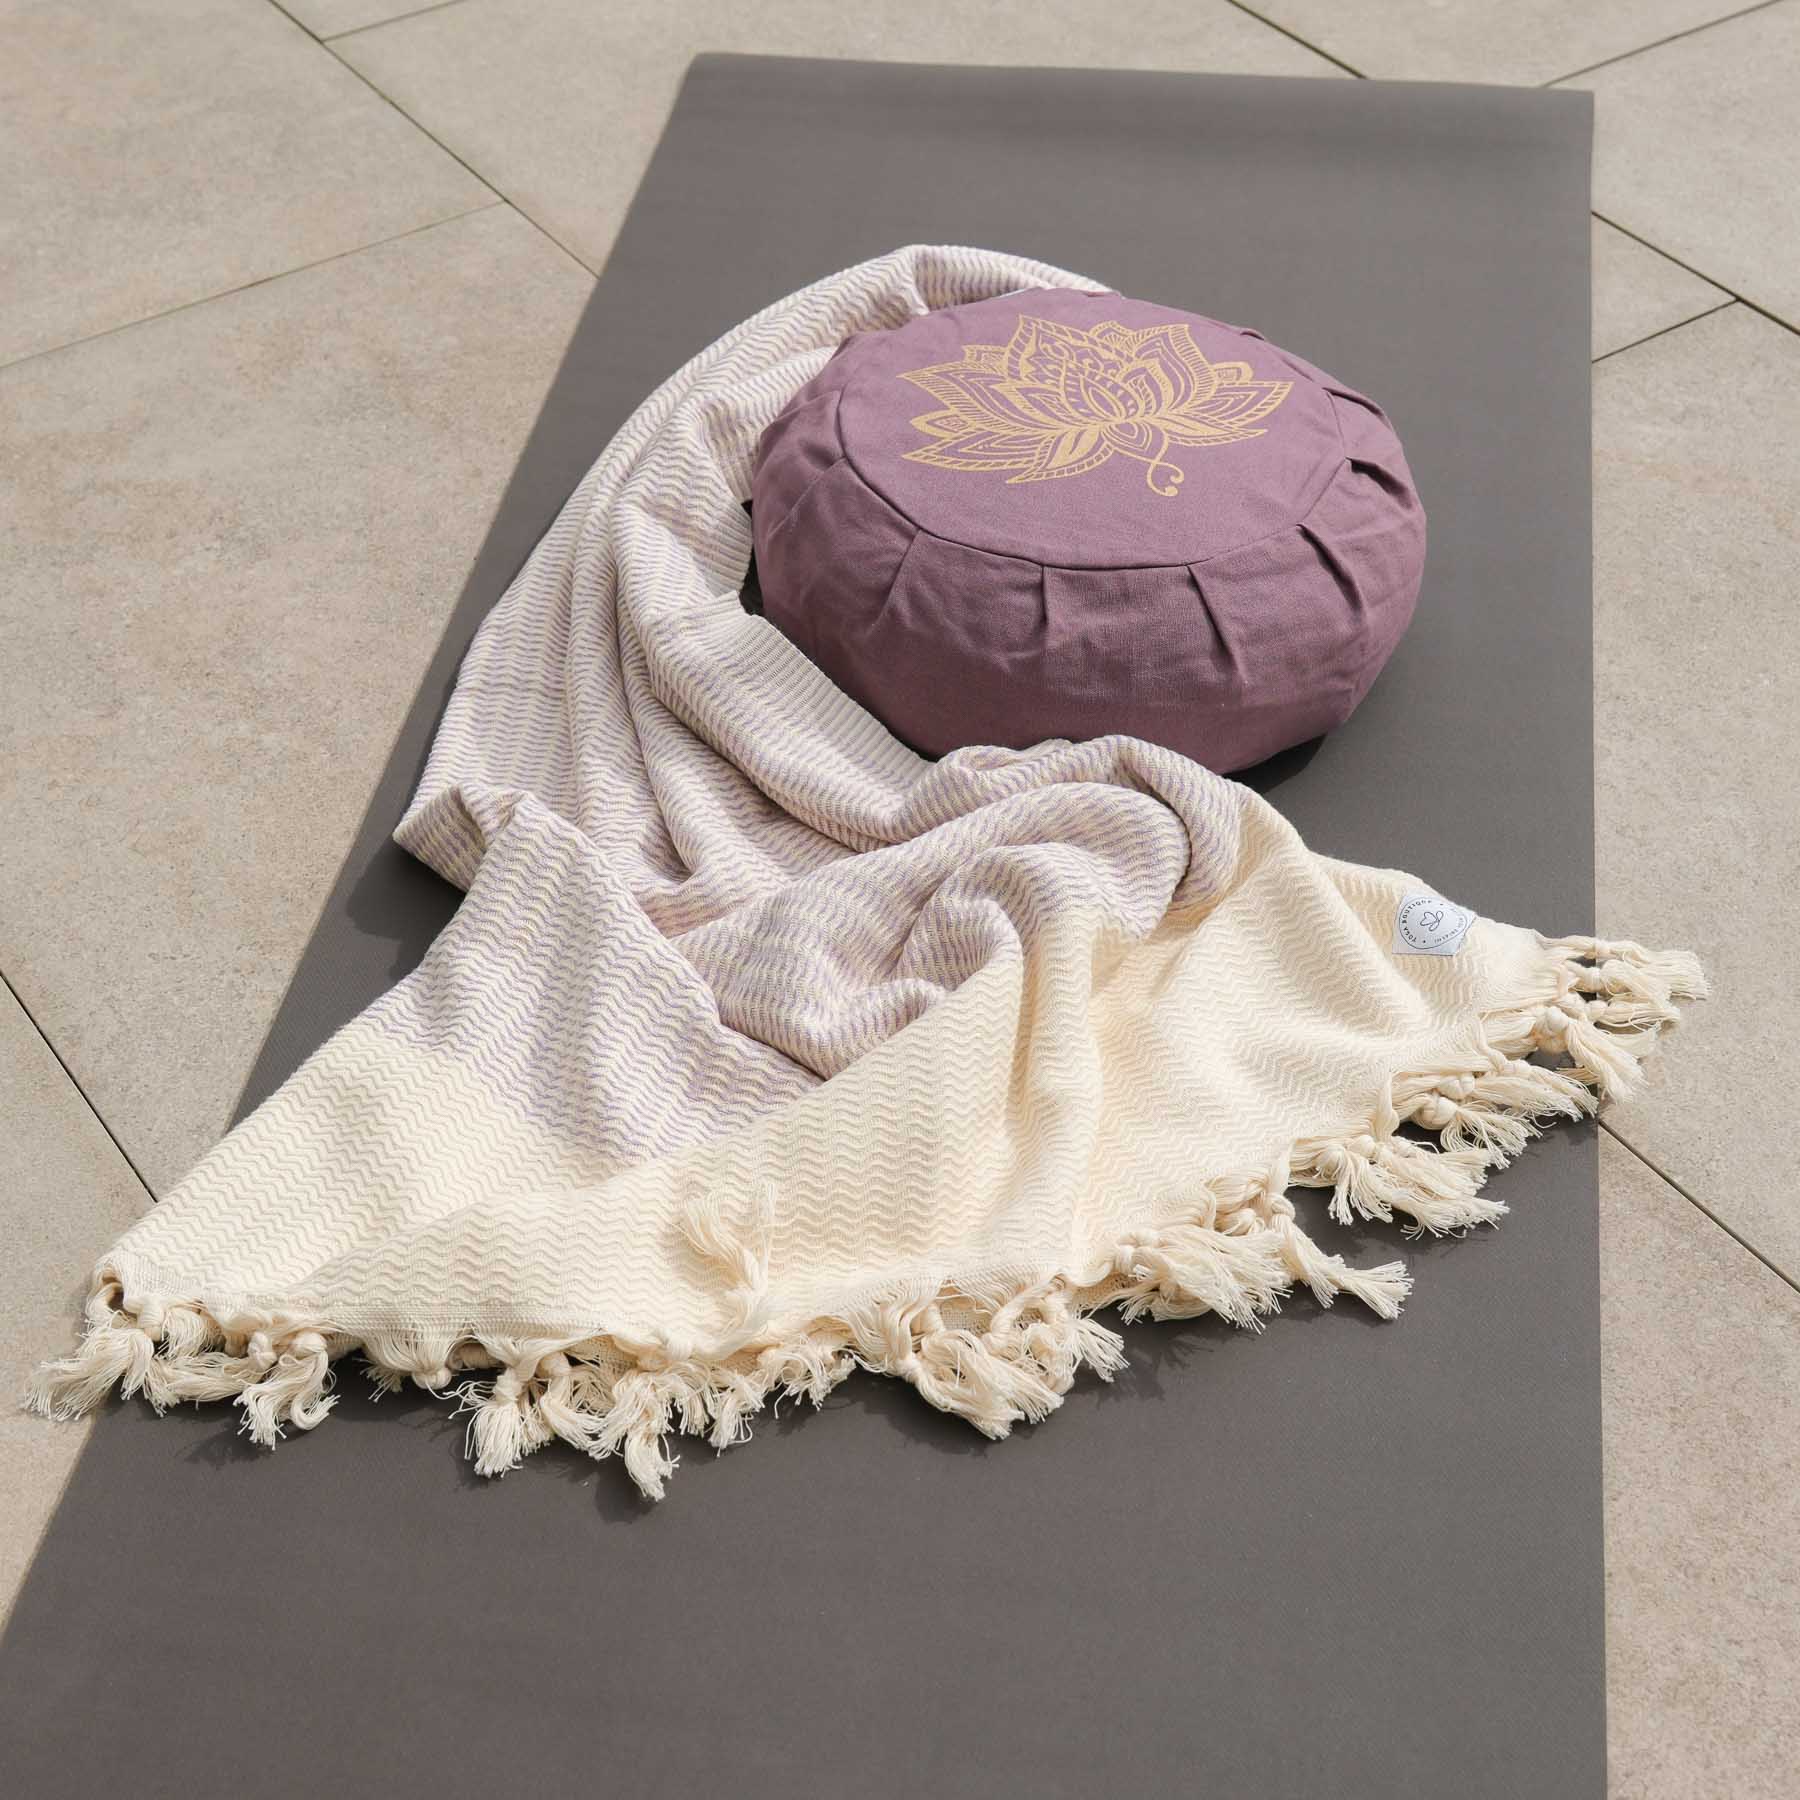 Coperta yoga Relax in cotone organico viola